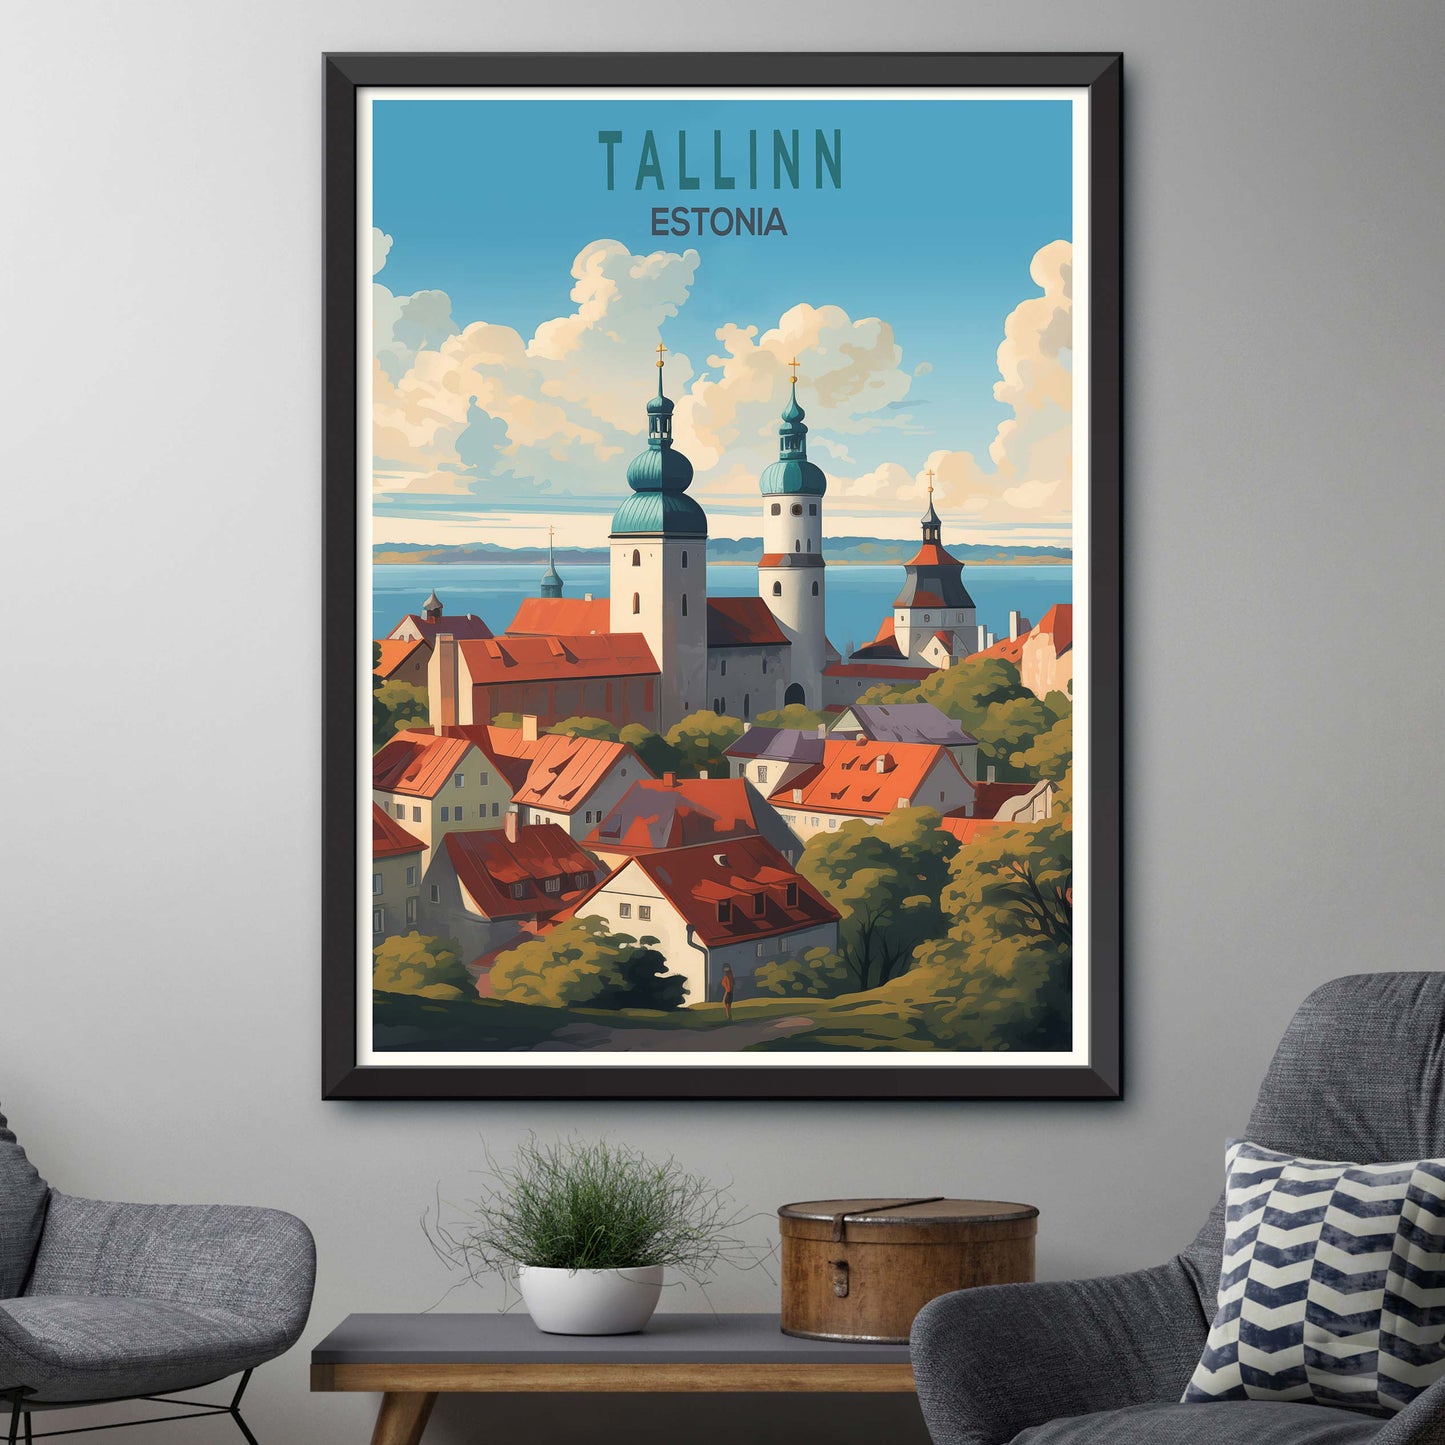 Tallinn Estonia Travel Poster Wall Art, Tallinn Estonia Travel Poster